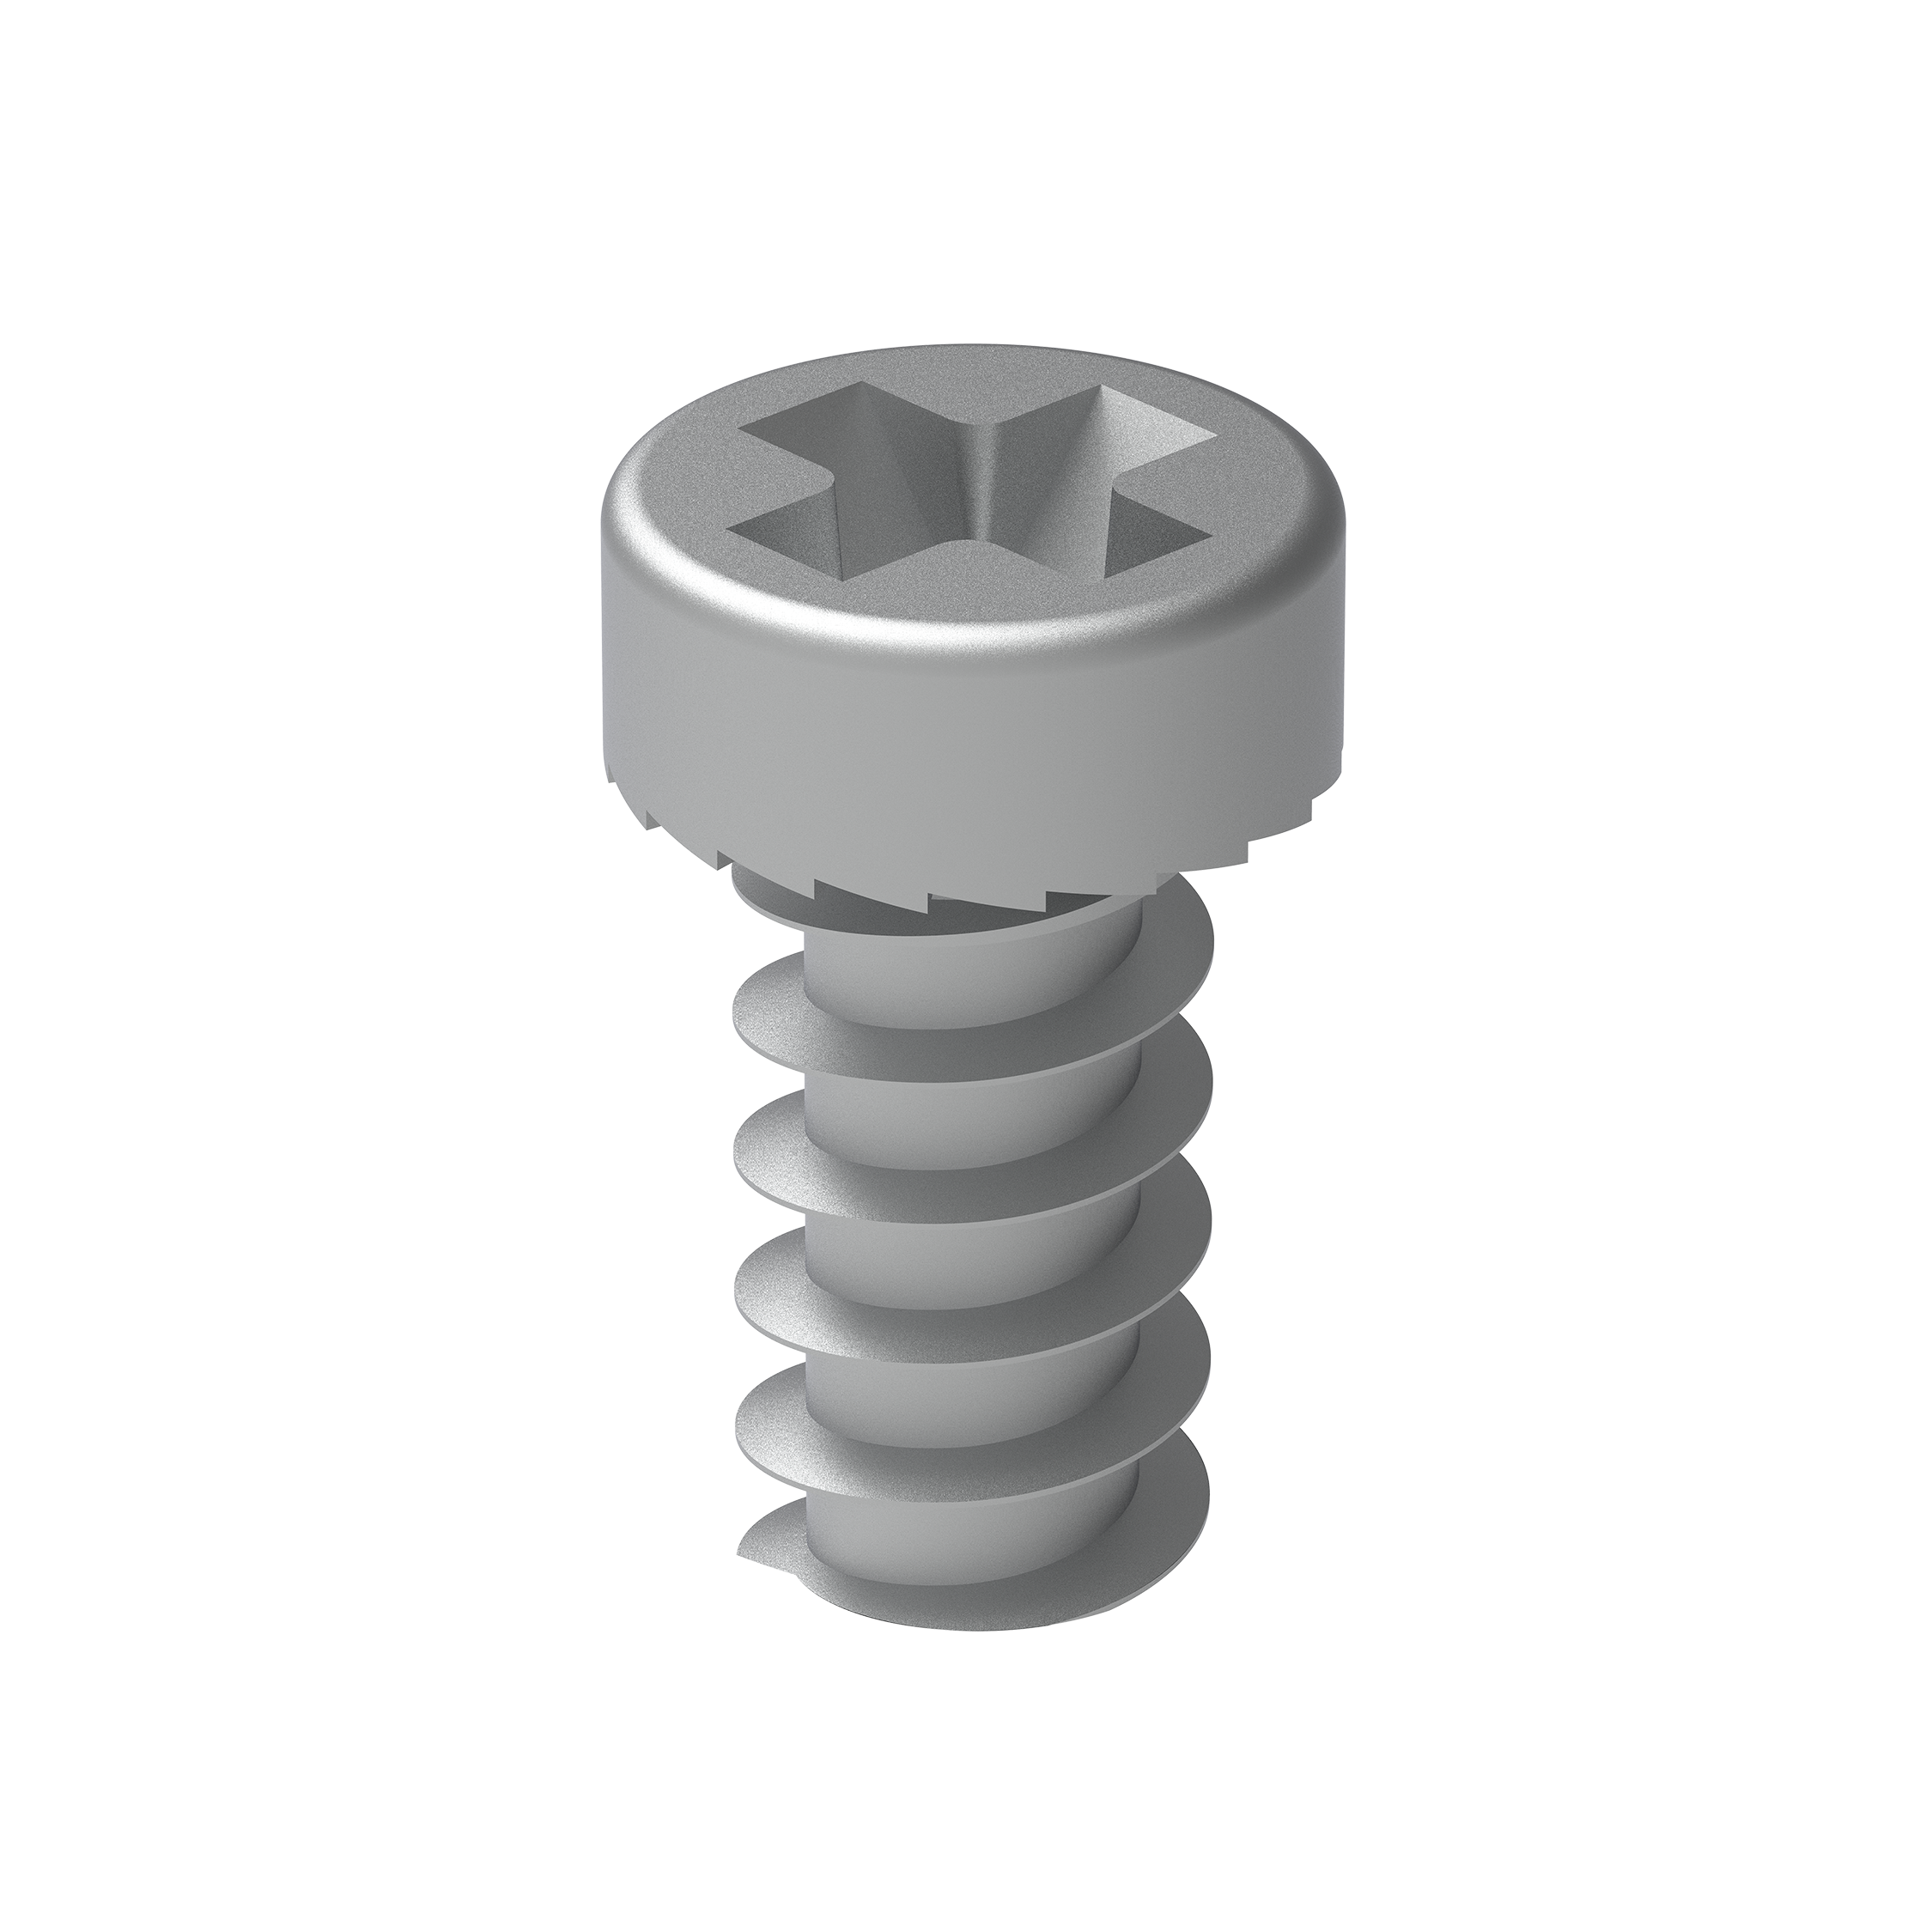 Bindings pan head screws kit 11mm